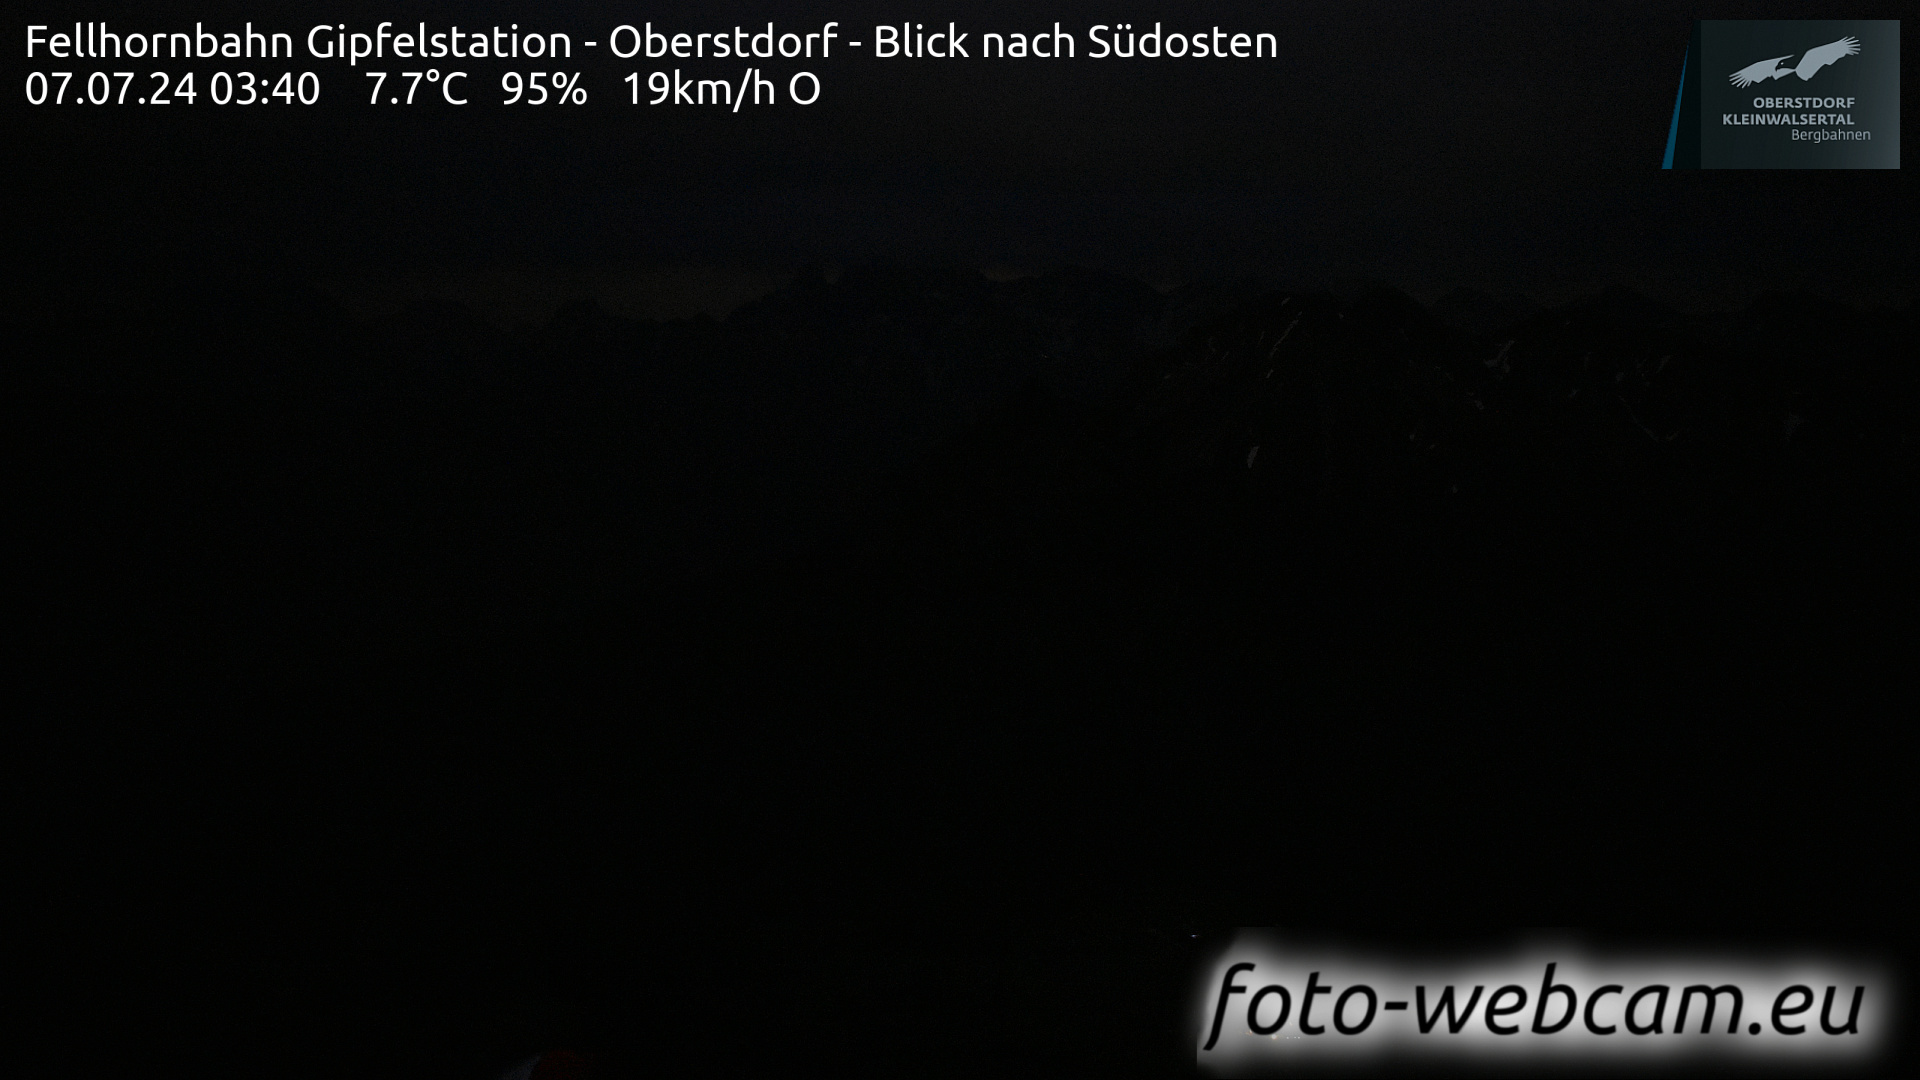 Oberstdorf Dom. 03:49